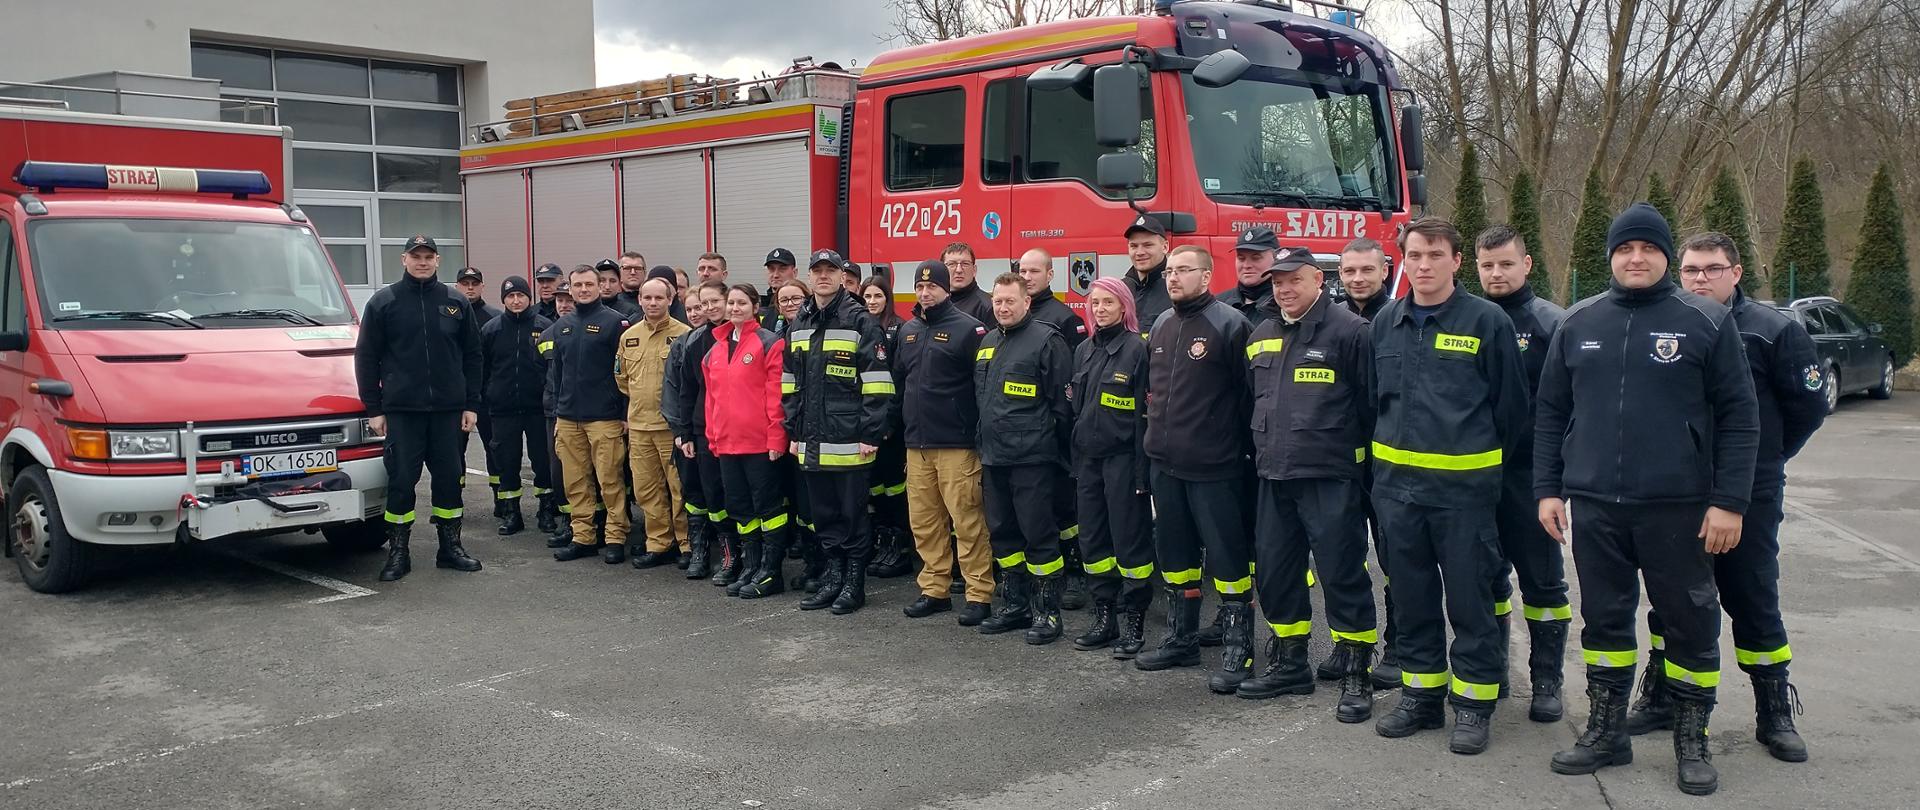 Szkolenie kierującego działaniem ratowniczym dla strażaków ratowników OSP. Kadra dowódcza OSP po uzyskaniu pozytywnego wyniku egzaminu kończącego szkolenie. 